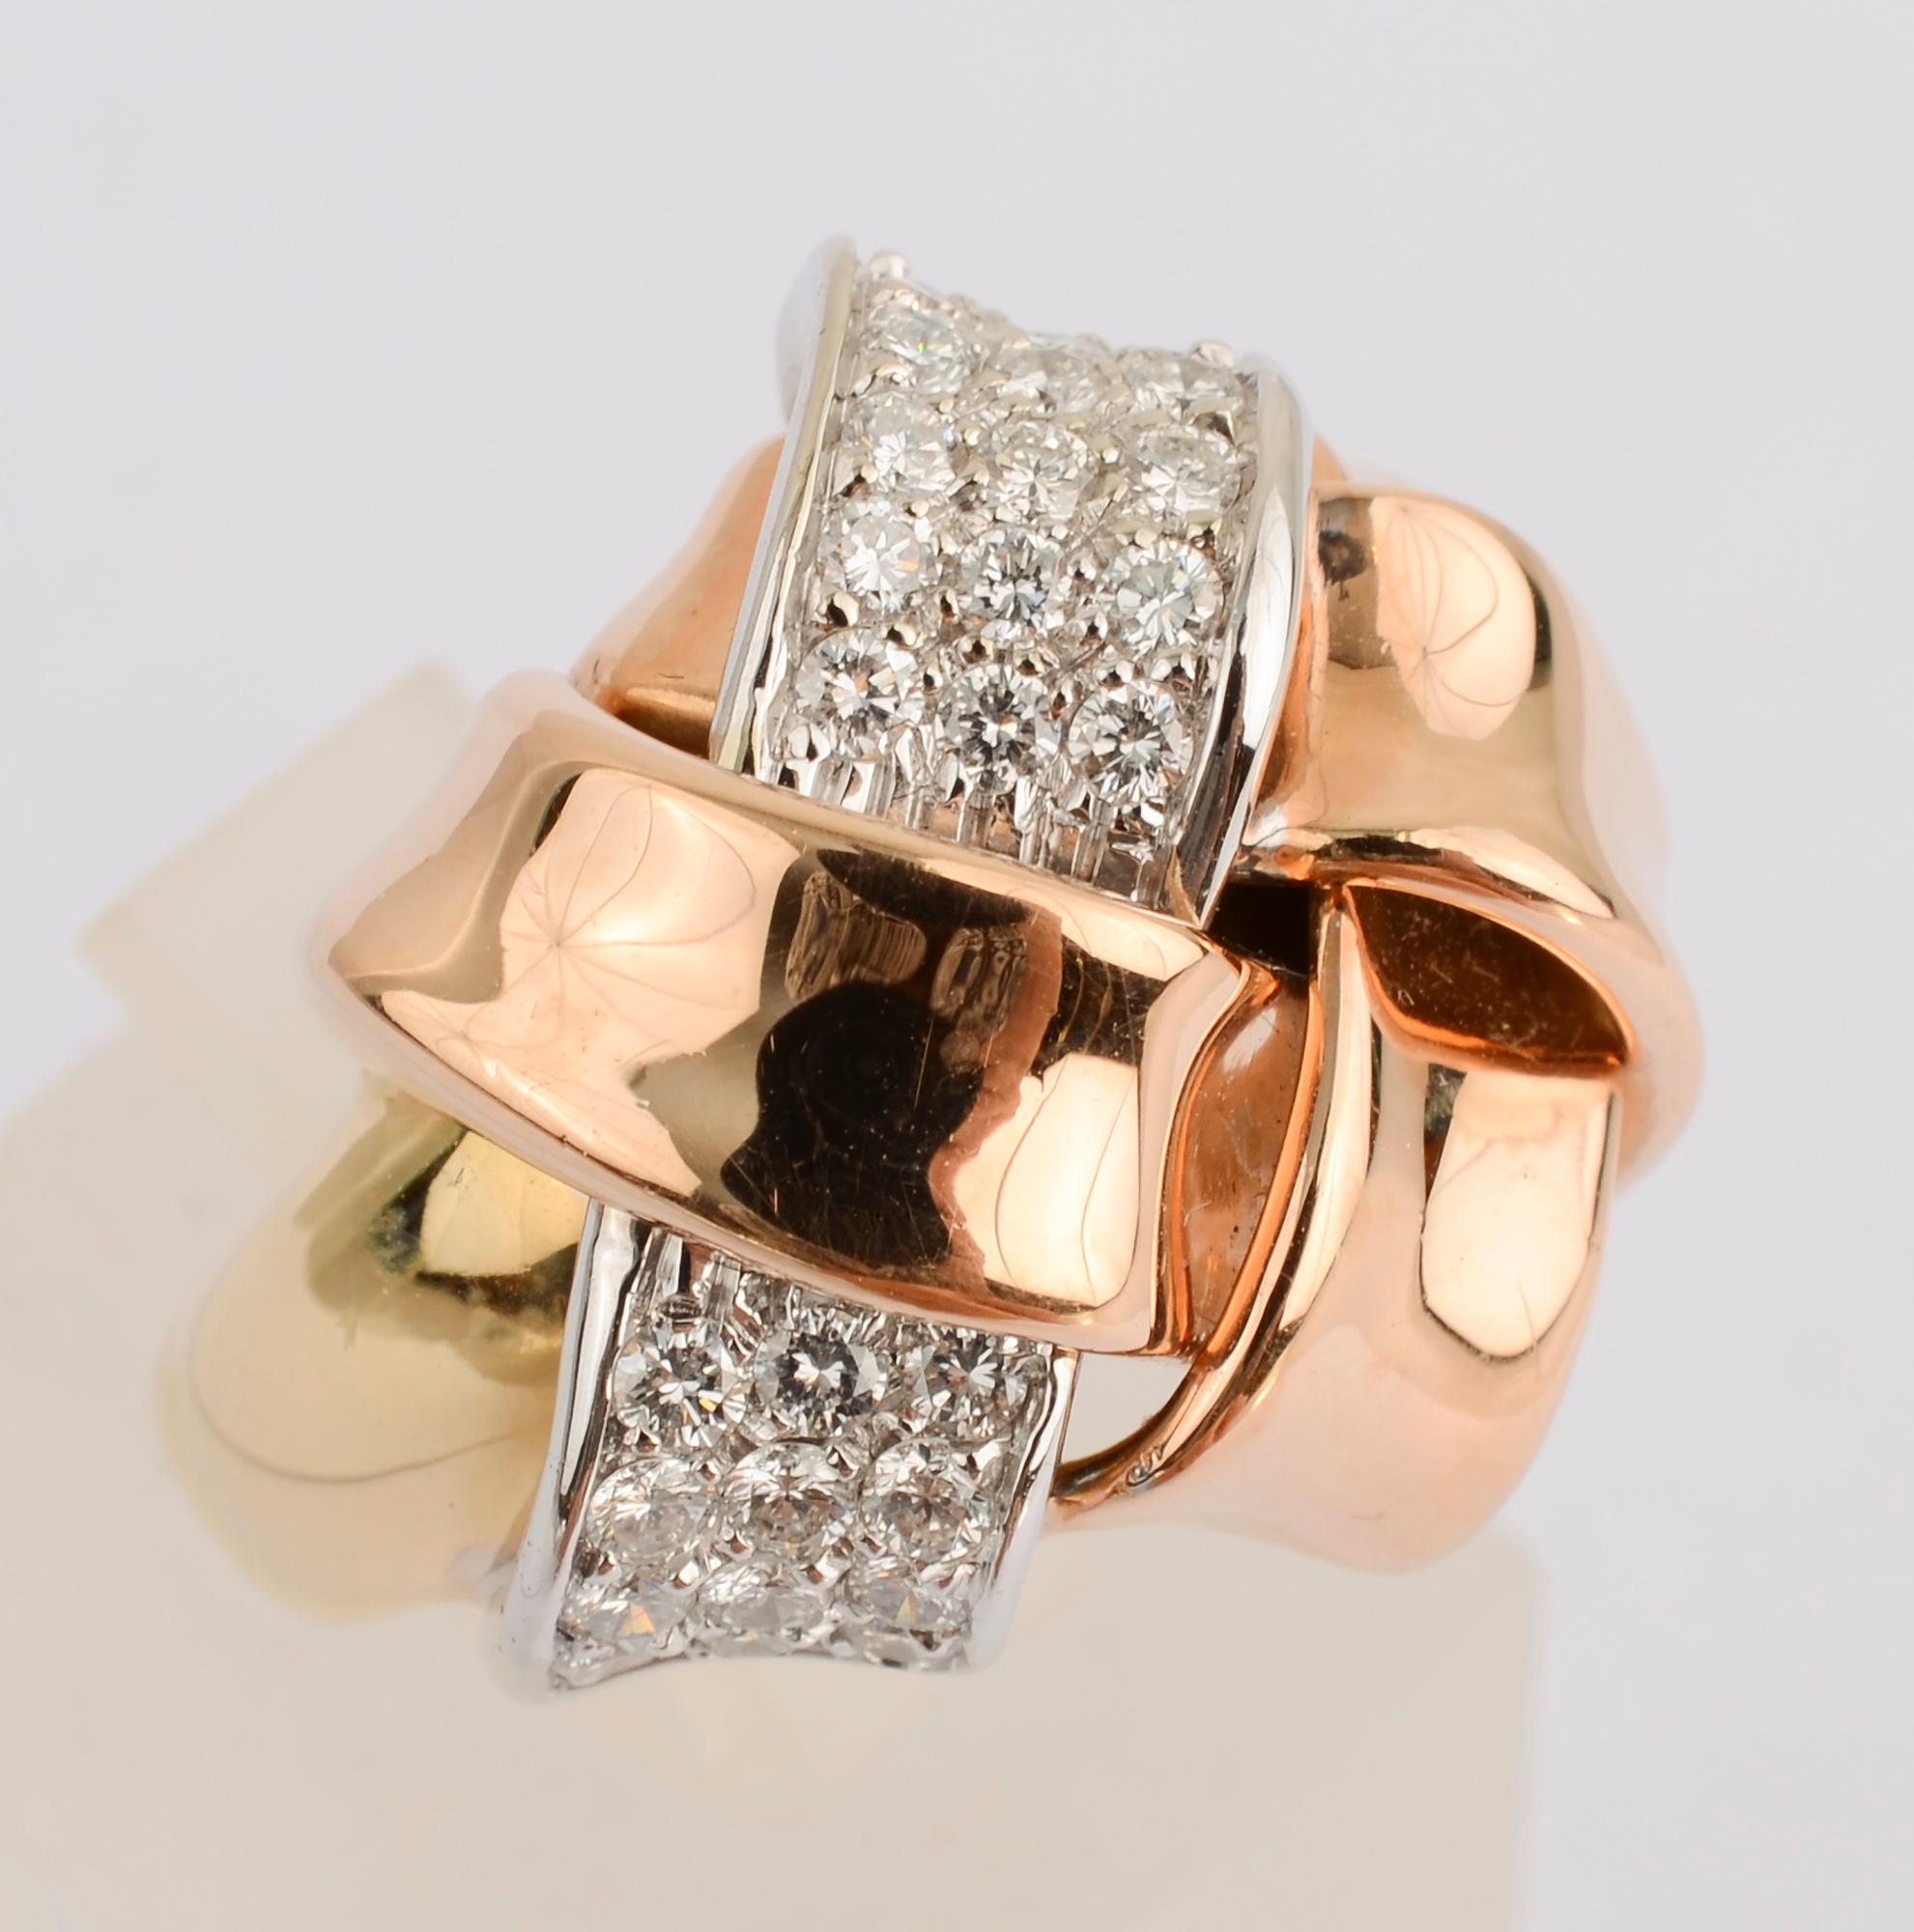 Großer Ring aus Gold und Diamanten, bei dem ein Goldband mit einem Diamanten verflochten ist. Der Schaft des Rings ist aus Gelbgold und die Gitterbänder sind aus Roségold. Der Ring hat die Größe 7 3/4.   Es kann leicht nach oben oder unten